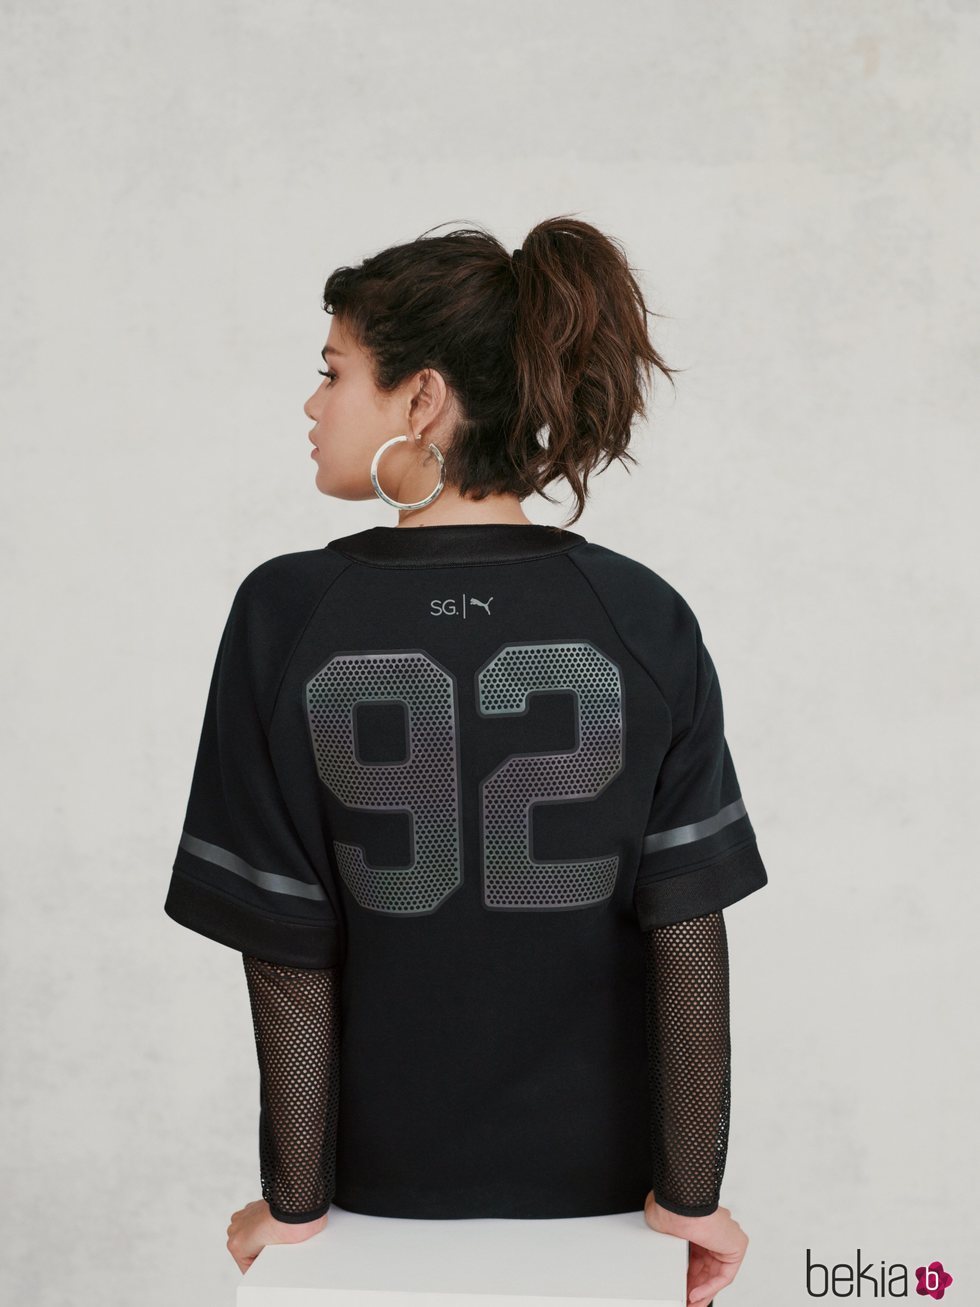 Selena Gomez con una camiseta deportiva negra de la colección de Puma x Selena Gomez